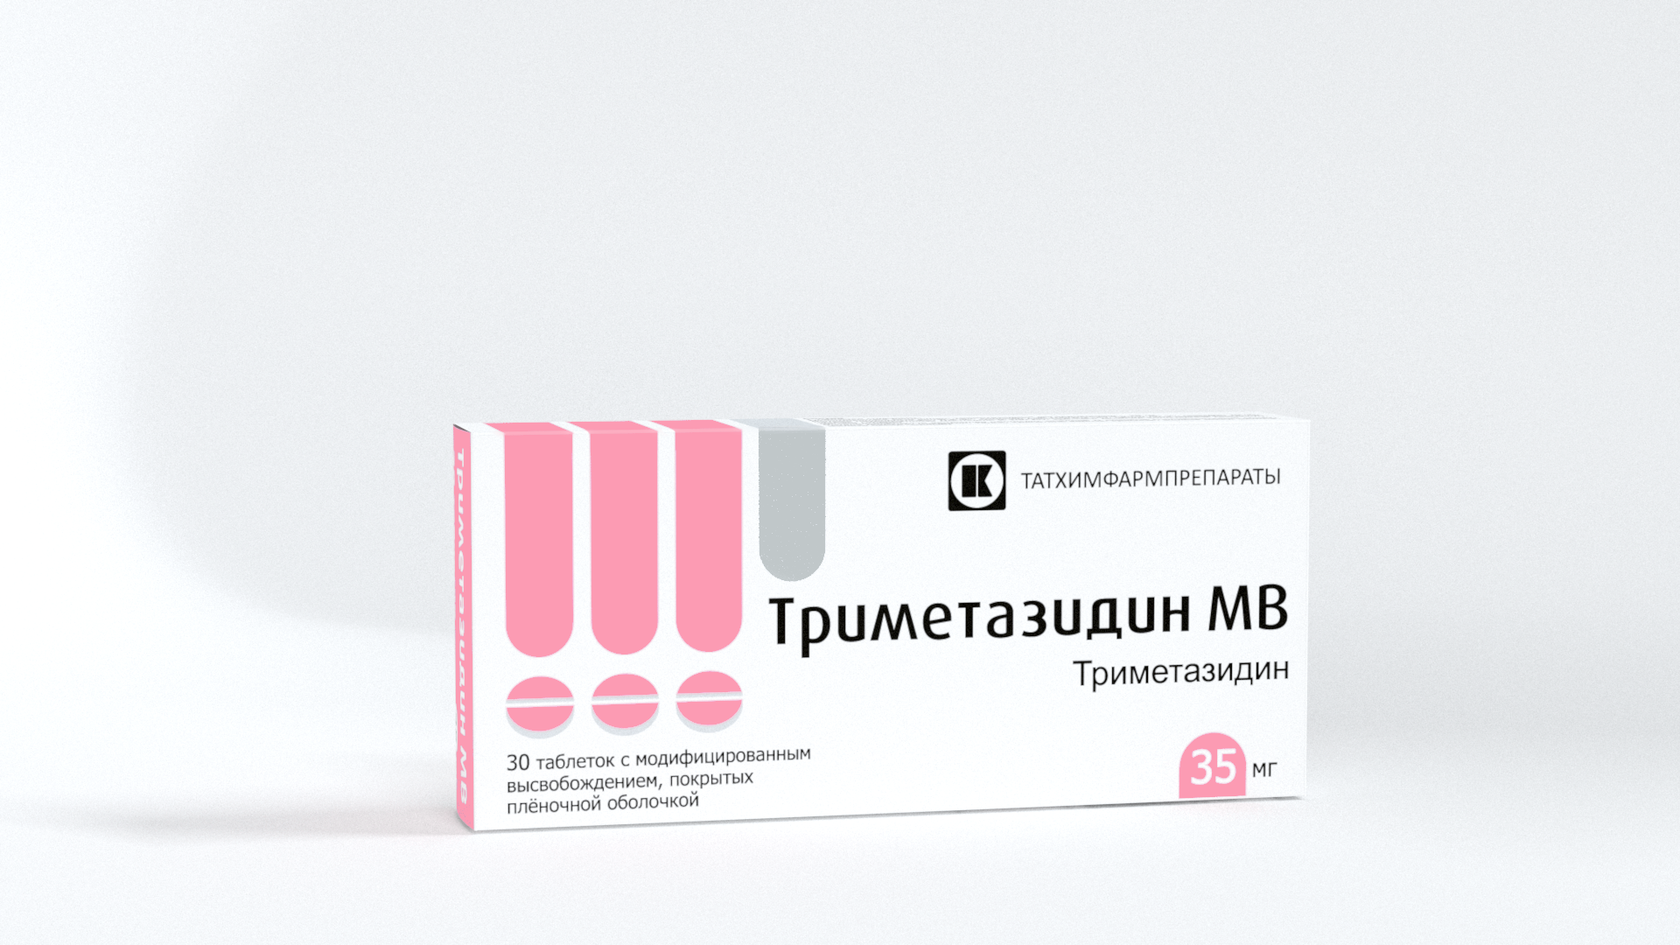 Триметазидин 35 мг. Триметазидин МВ 35 мг. Триметазидин 80 мг. Триметазидин 20 мг. Триметазидин таблетки для чего назначают